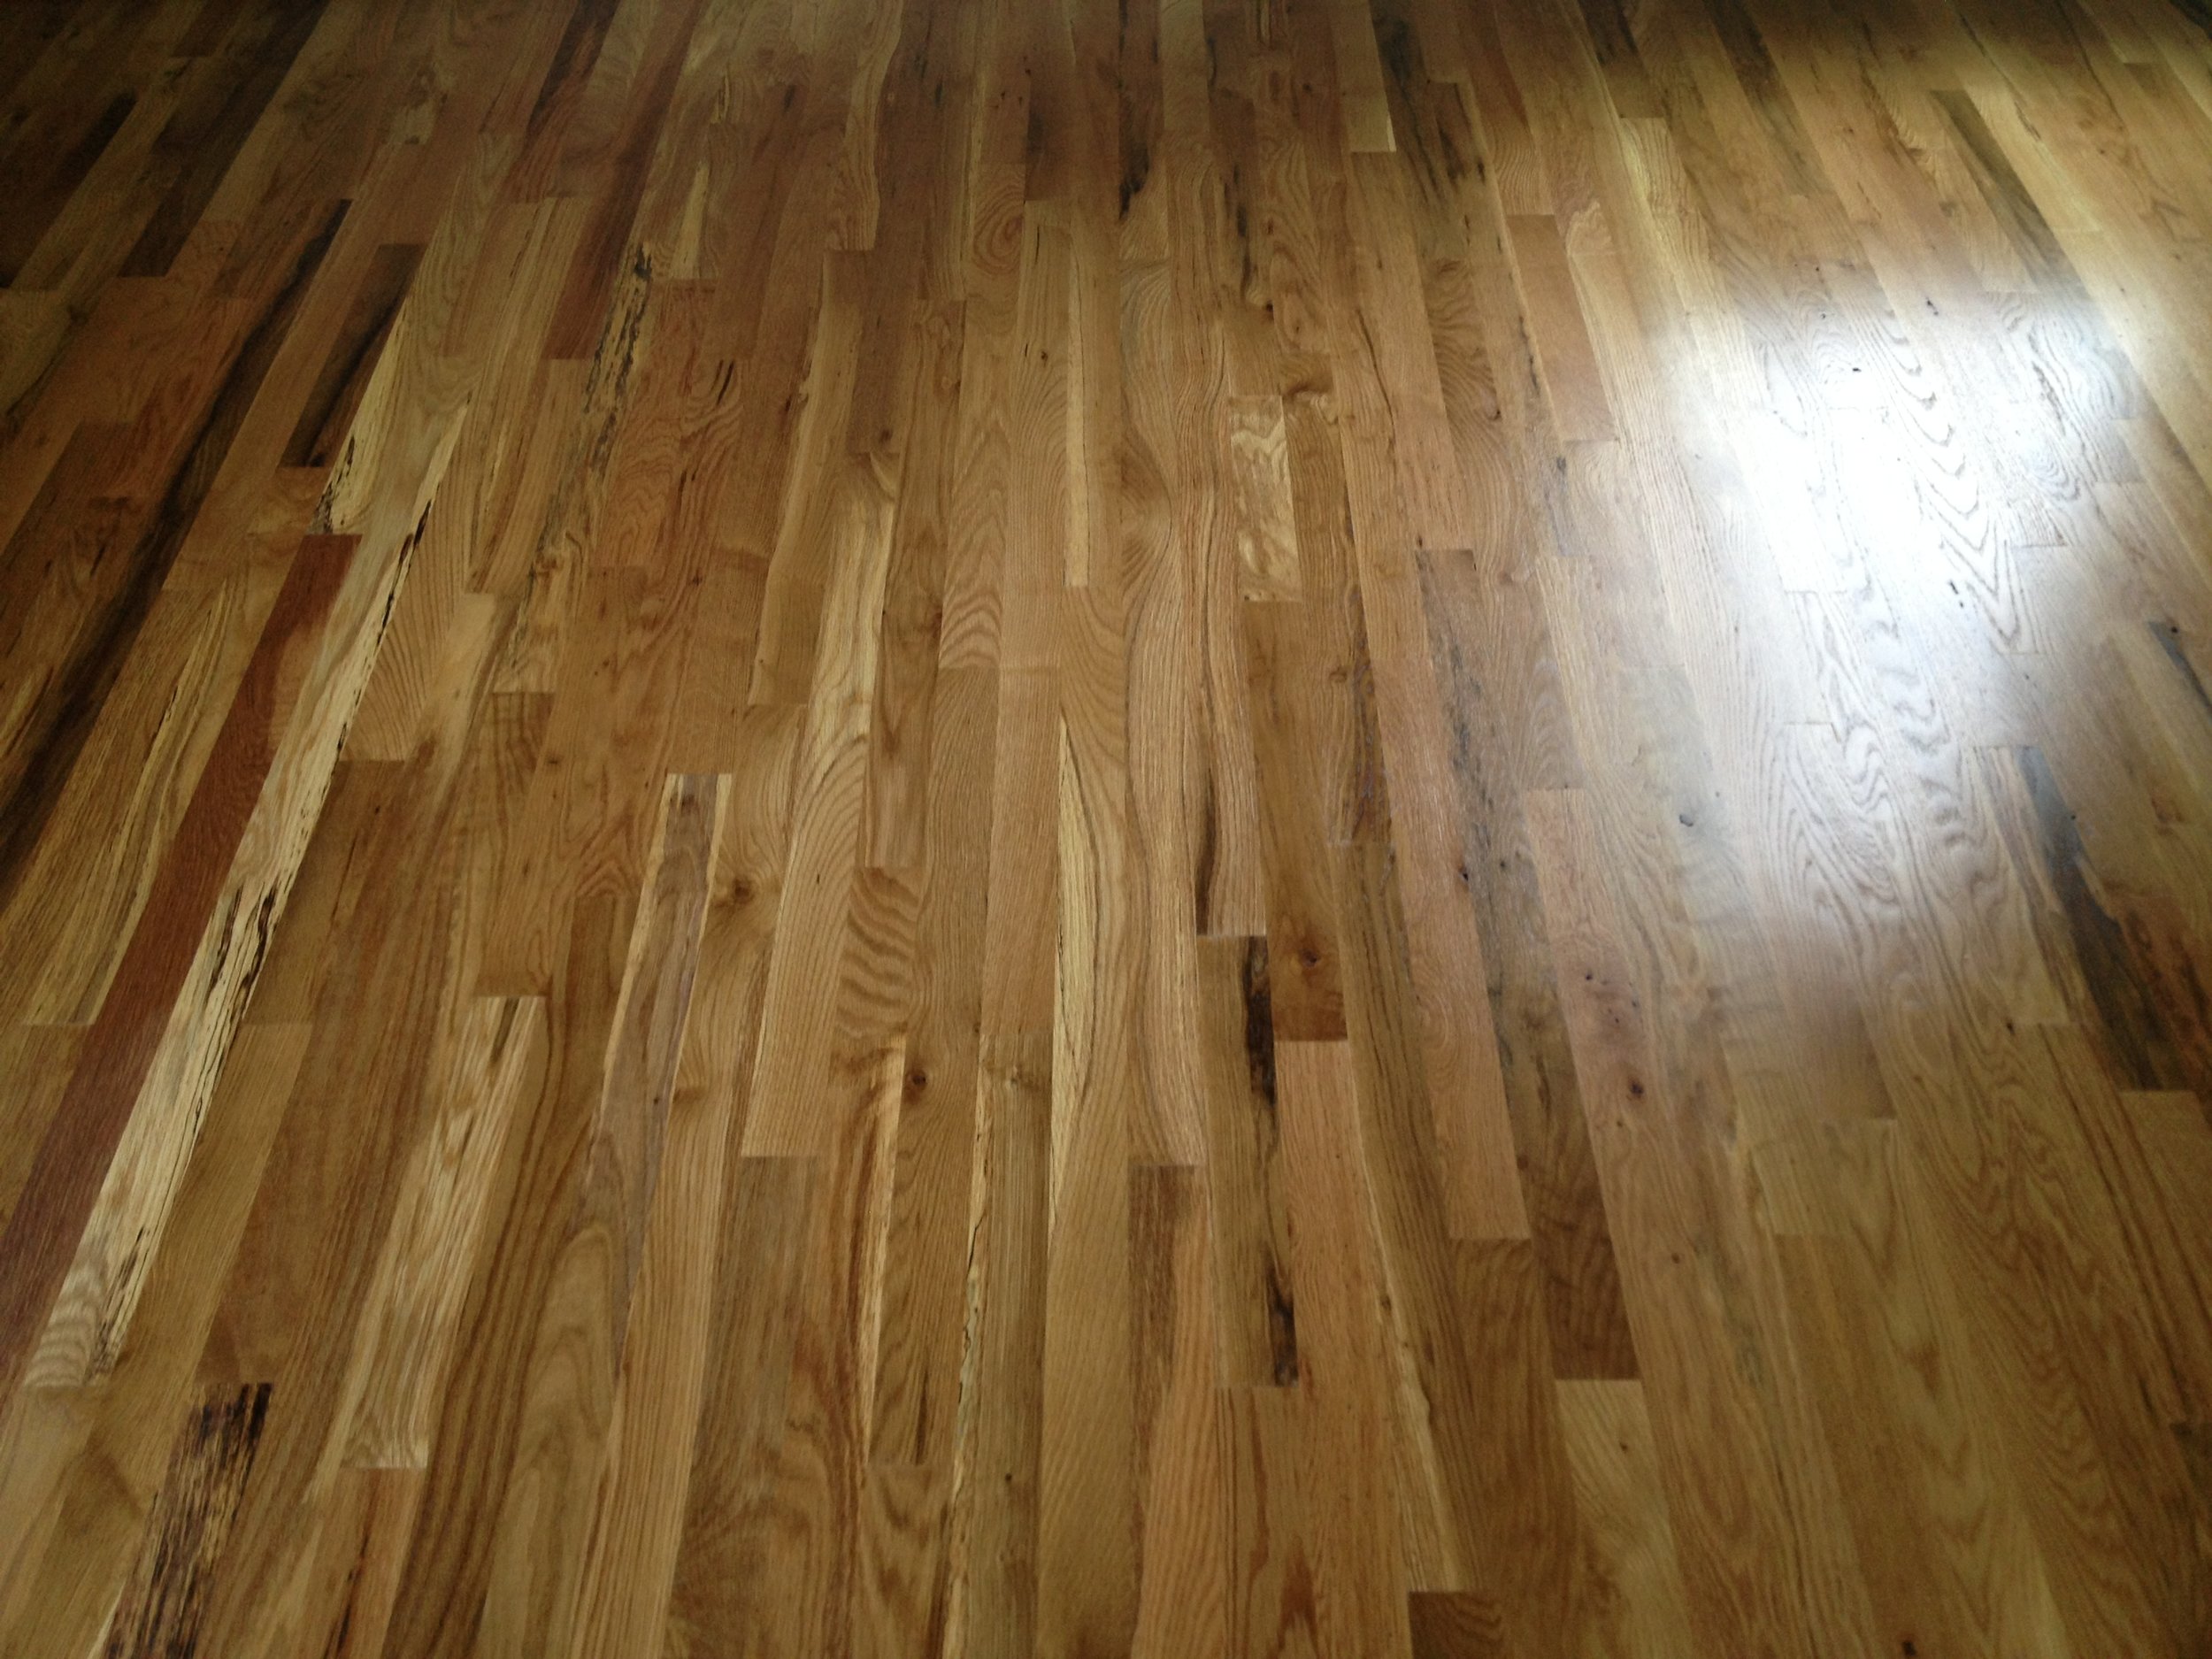 Red Oak Vs White Hardwood Flooring, 2 Hardwood Flooring